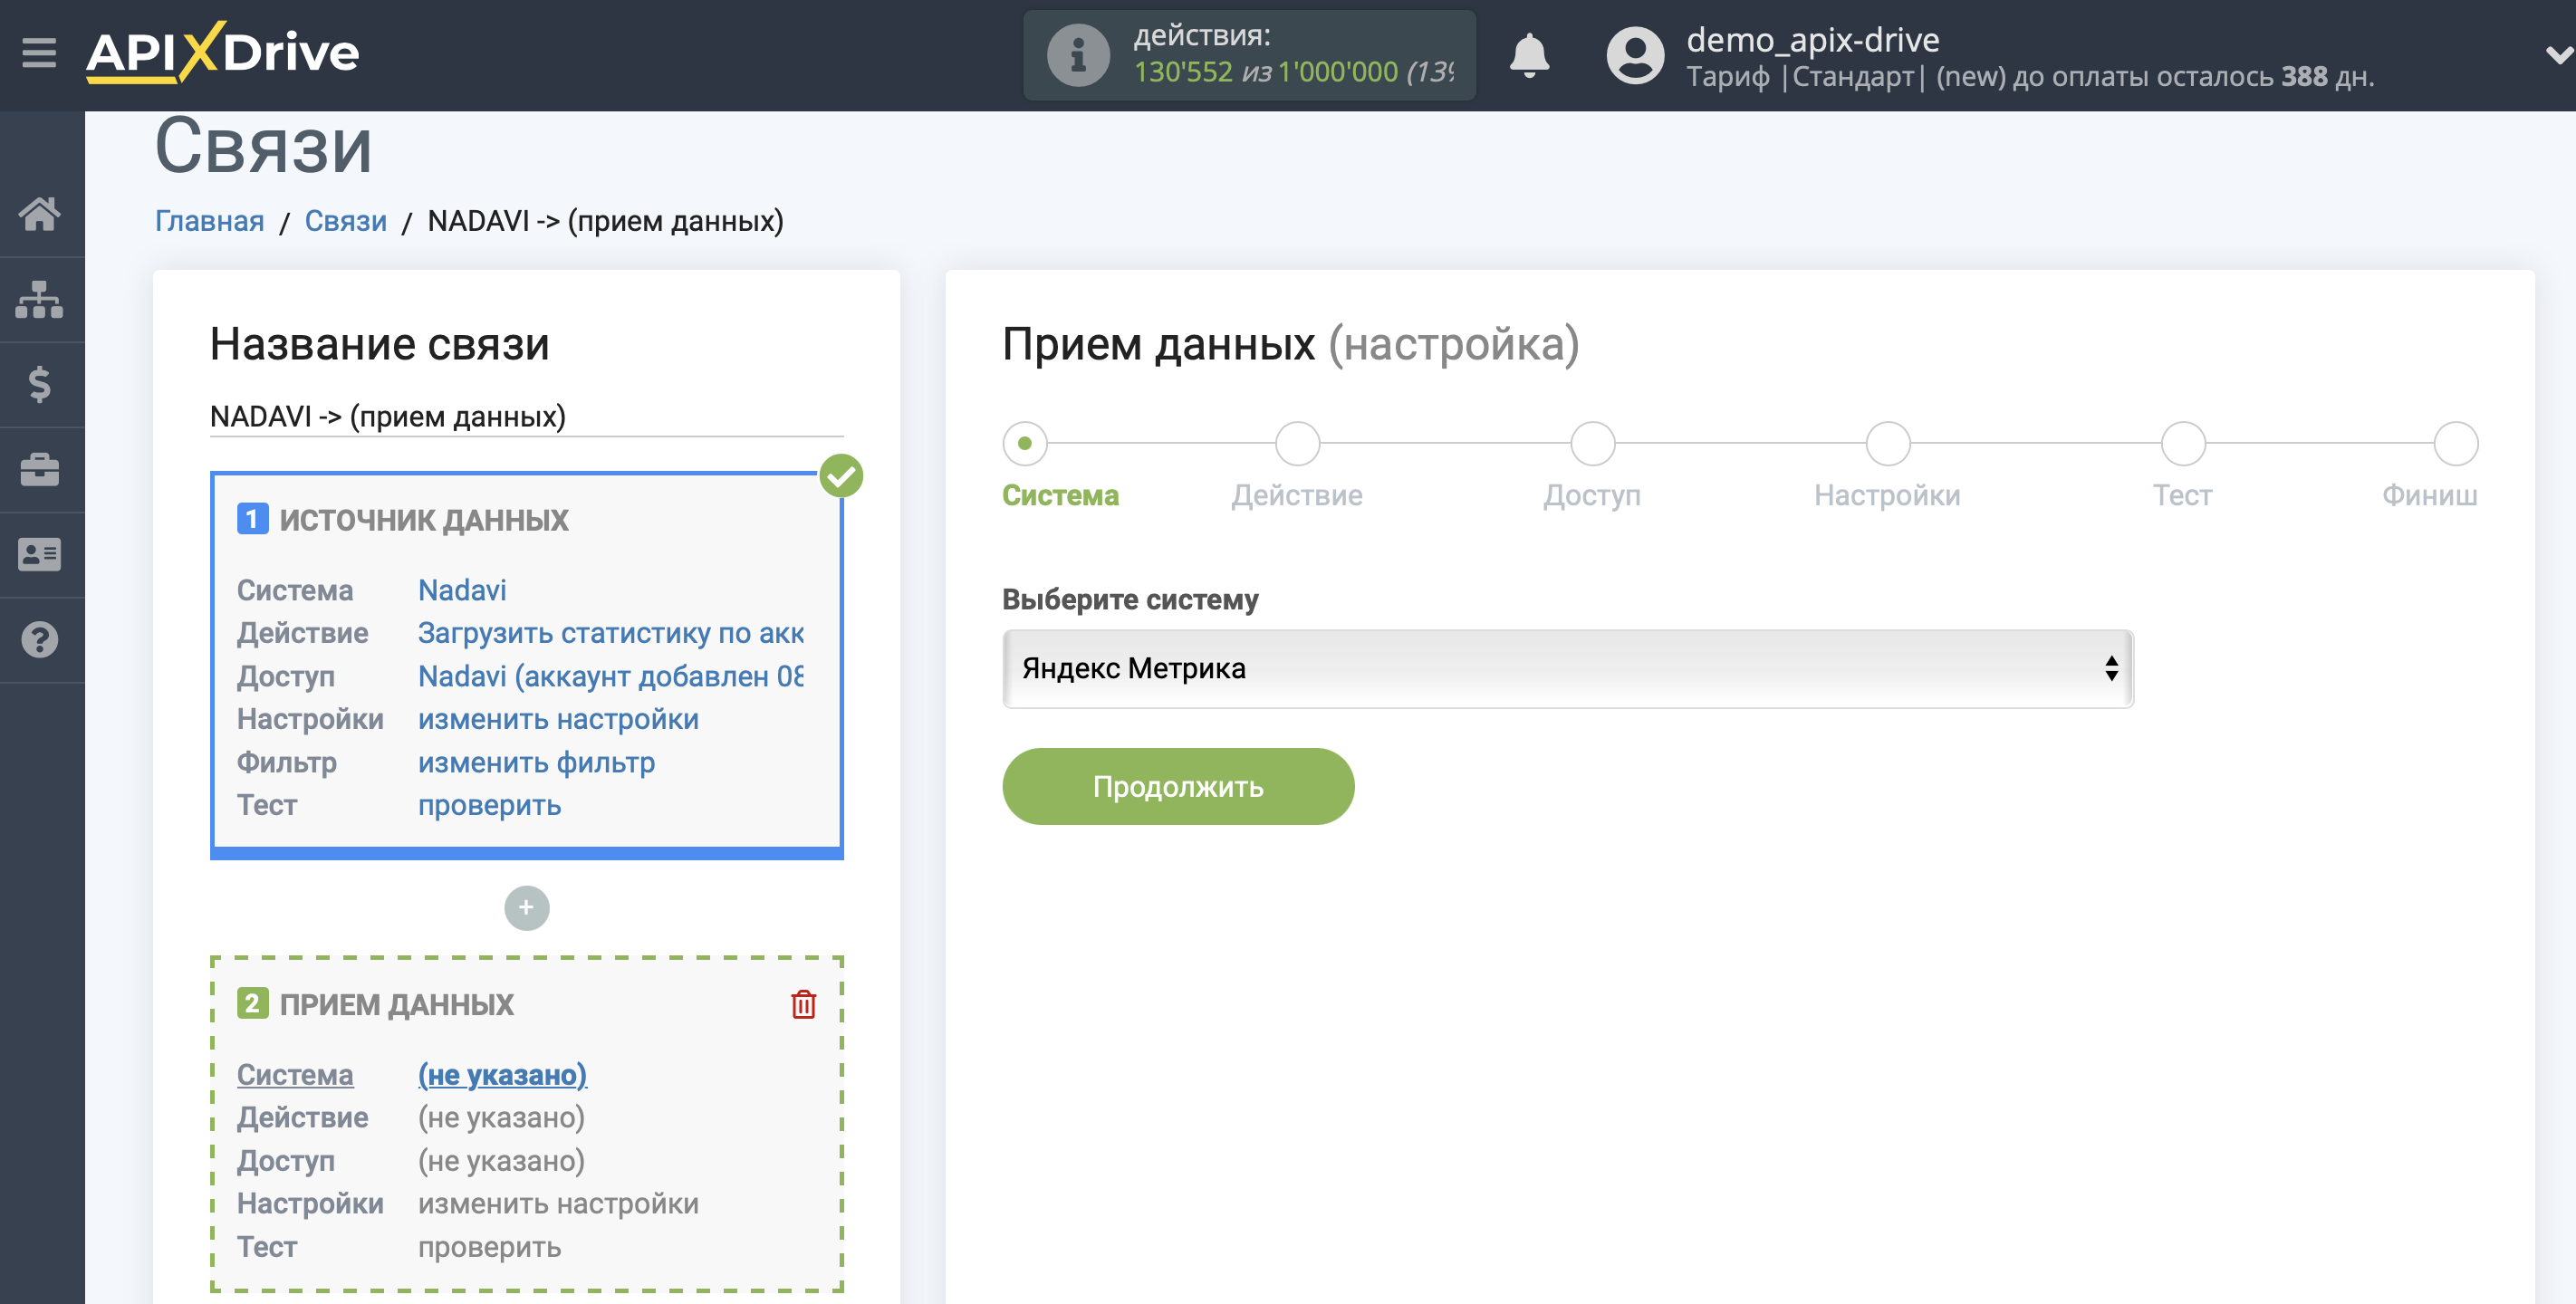 Импорт данных по расходам из Nadavi в Яндекс.Метрику | Выбор системы приема данных